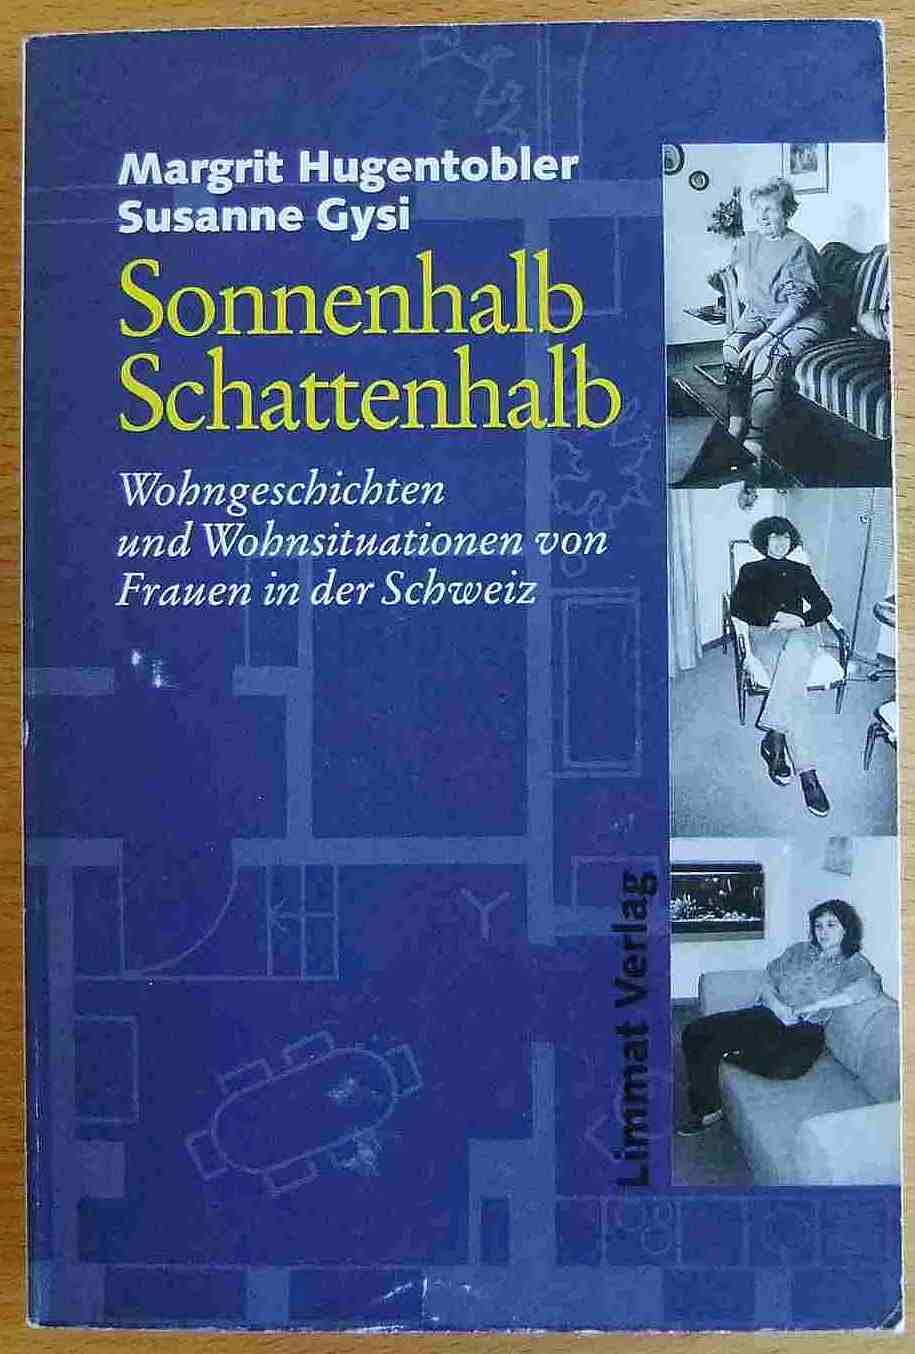 Hugentobler, Margrit und Susanne Gysi:  Sonnenhalb - Schattenhalb : Wohngeschichten und Wohnsituationen von Frauen in der Schweiz. 